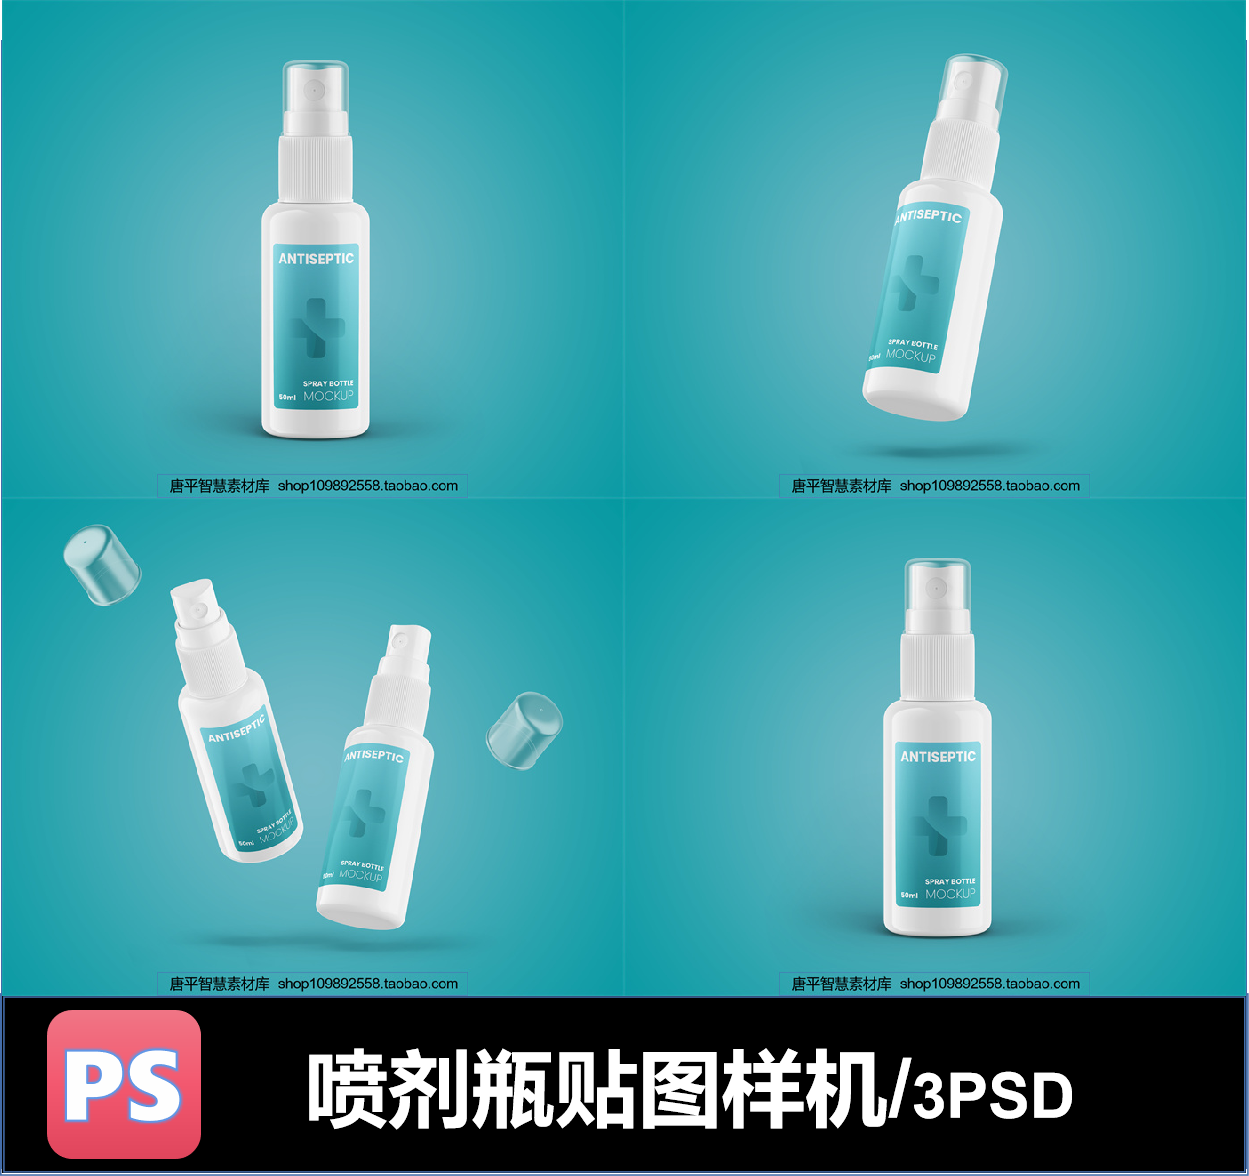 喷剂瓶口腔鼻腔喷耳朵喷效果图PSD智能样机贴图Ps后期素材合成